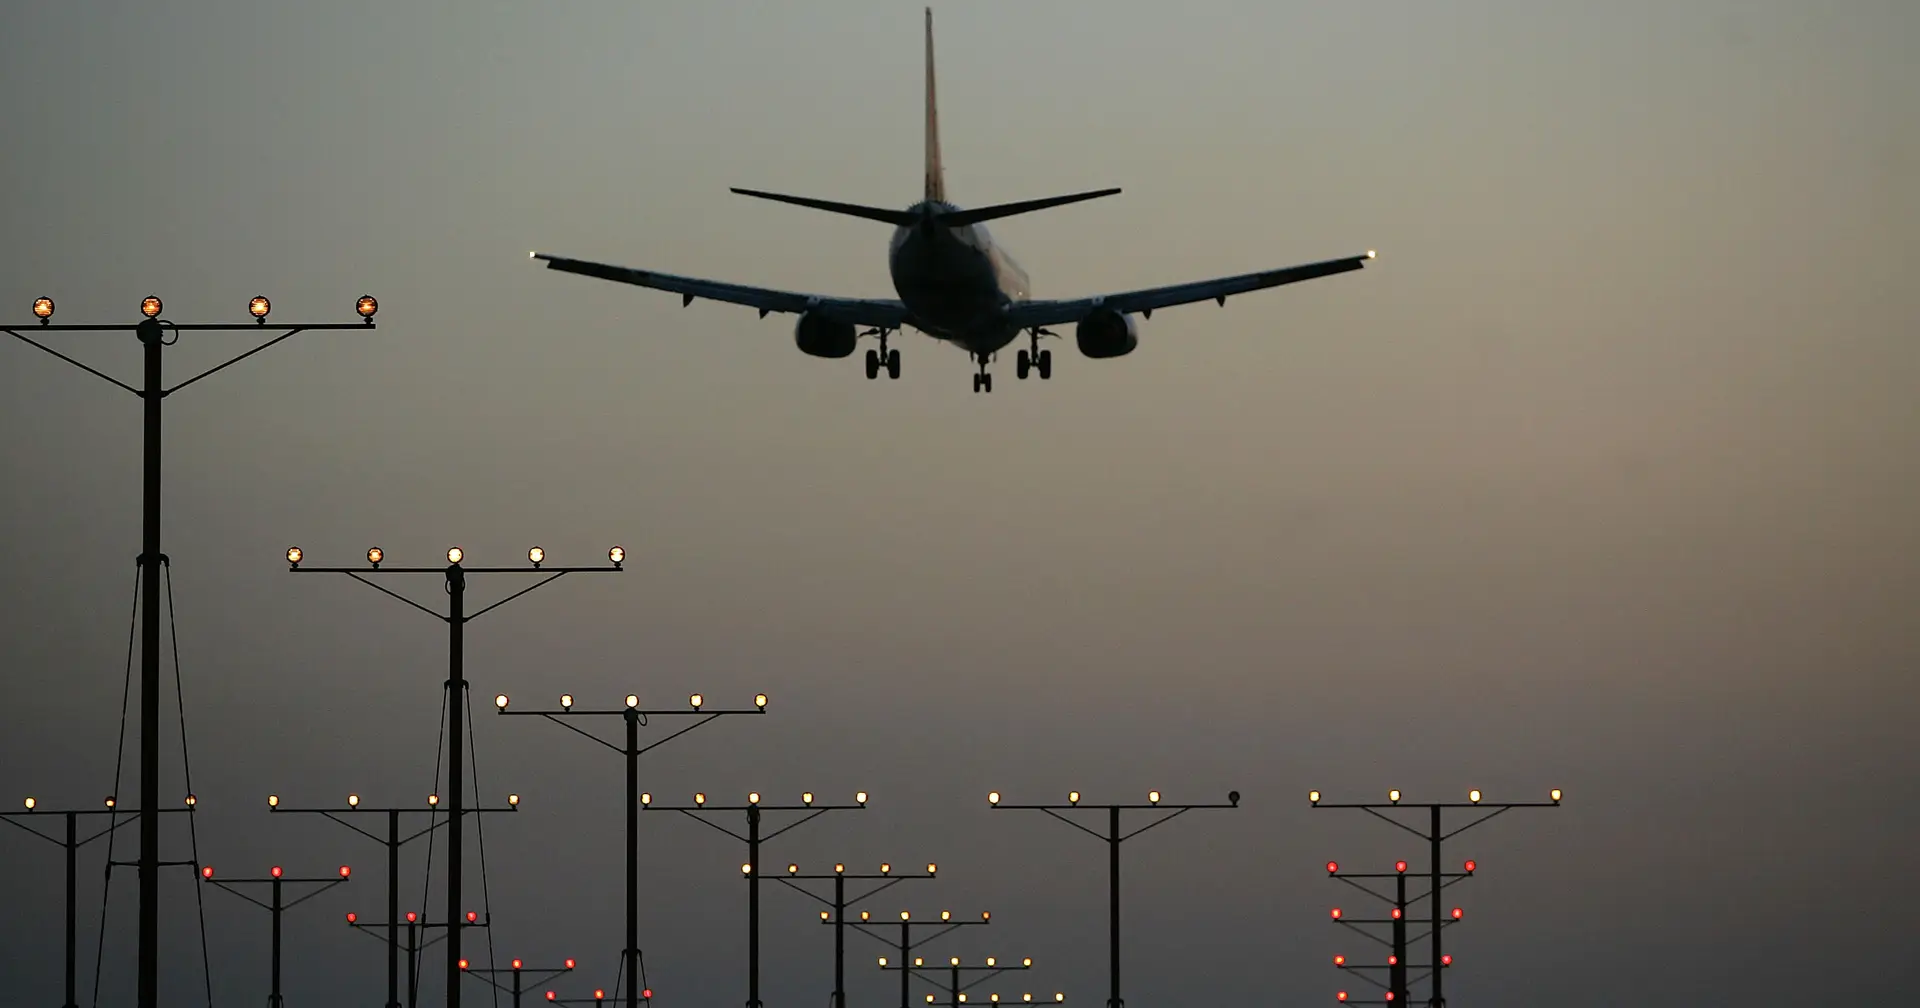 Navigator plant, mindestens 550 Millionen in umweltfreundlichen Flugbenzin zu investieren